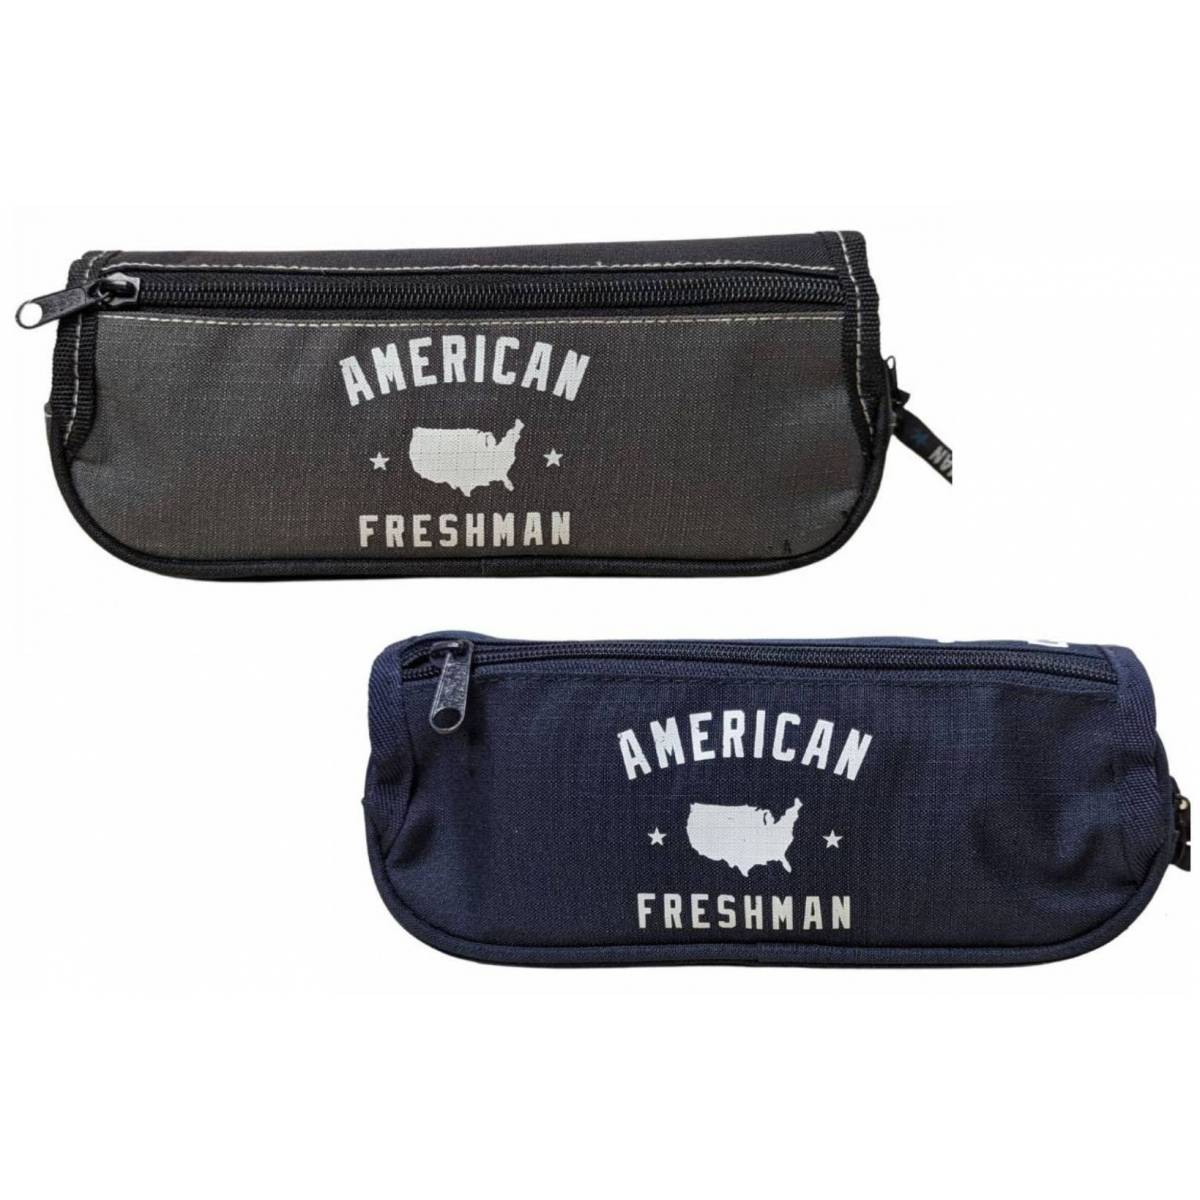 American Freshman - Trousse à rabat grise et bleu - 1 Compartiment